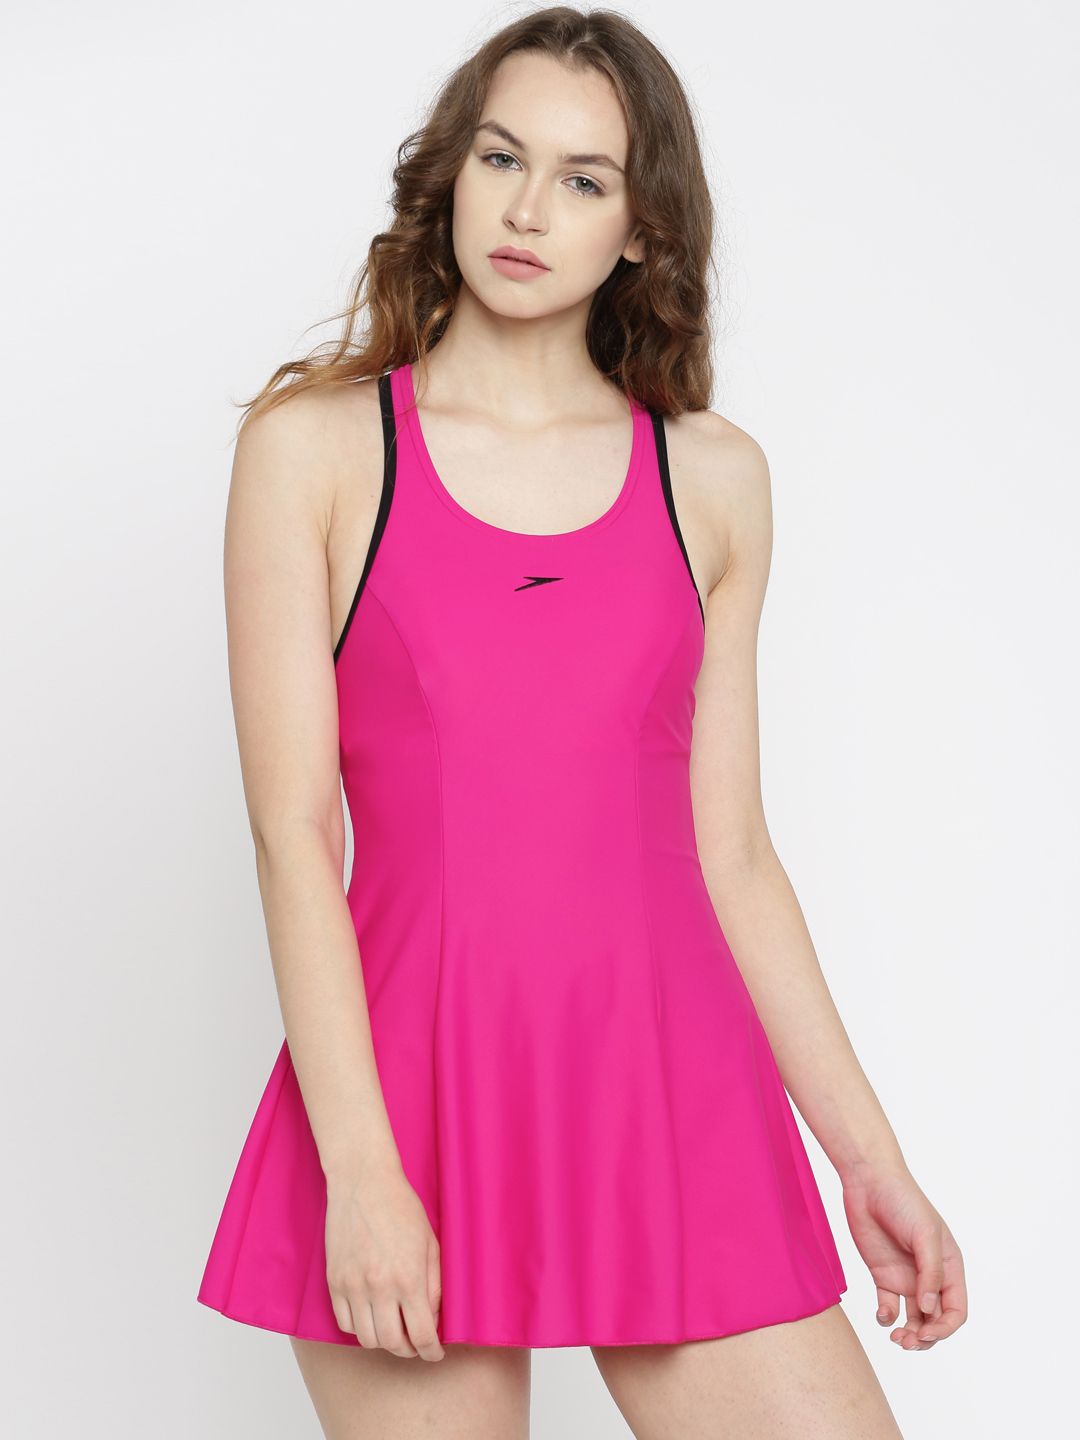 Speedo Pink Swimwear 802878B356 Price in India